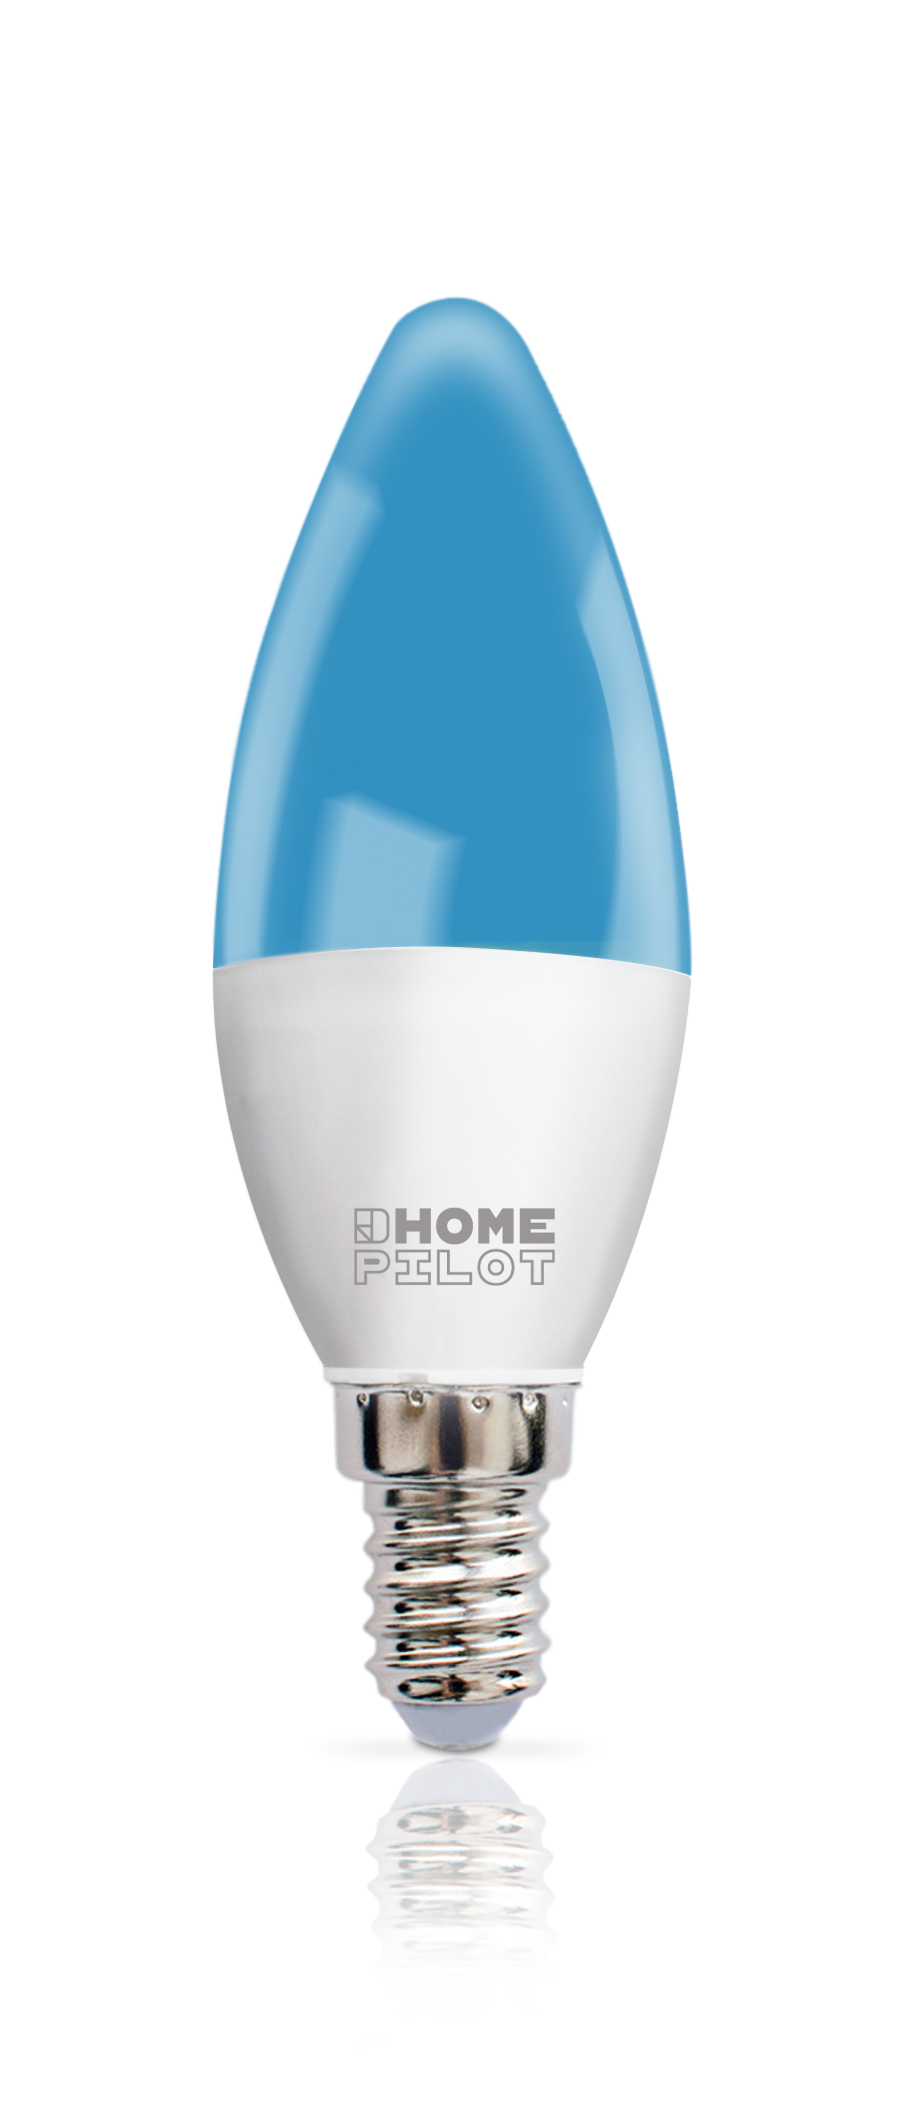 Ampoule connectée LED AddZ format E14 Blanc et couleur